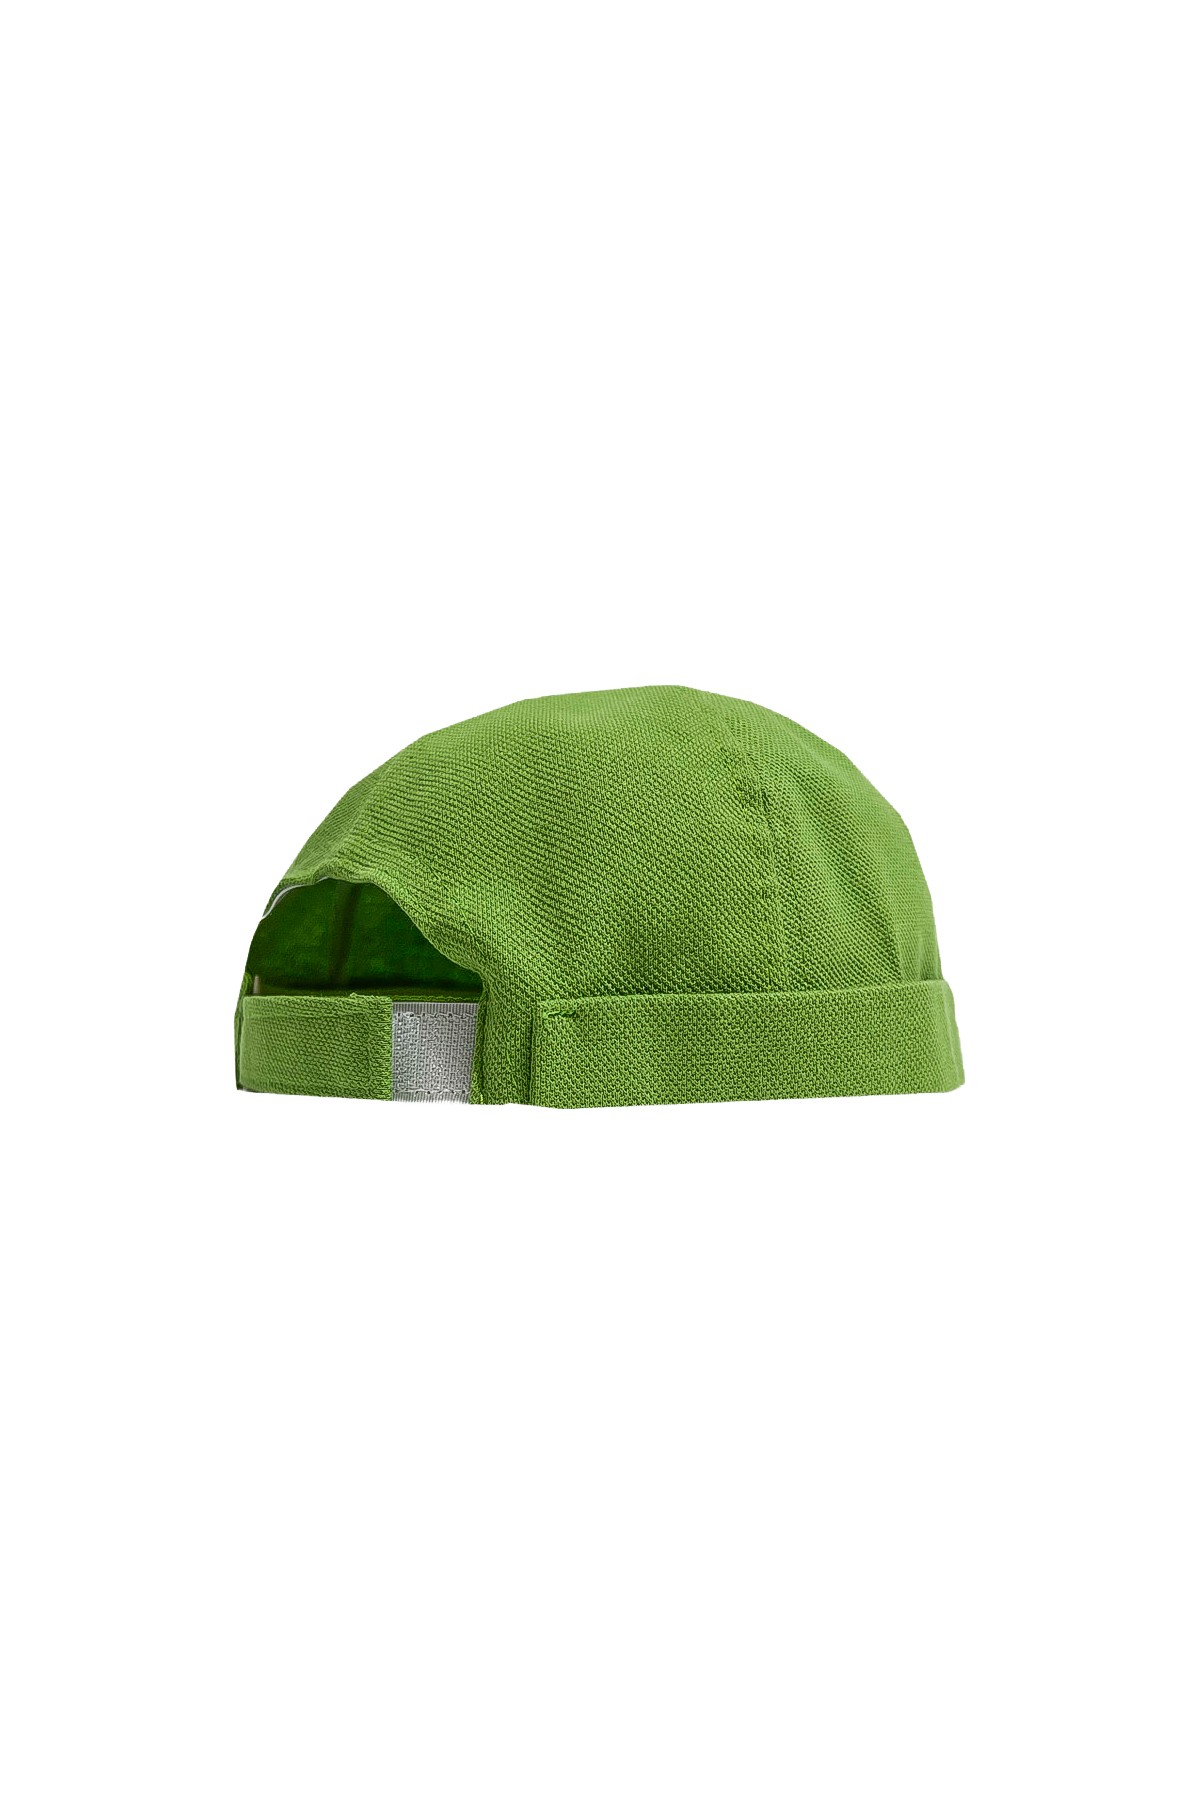 Nuo - قبعة - أخضر فستقي